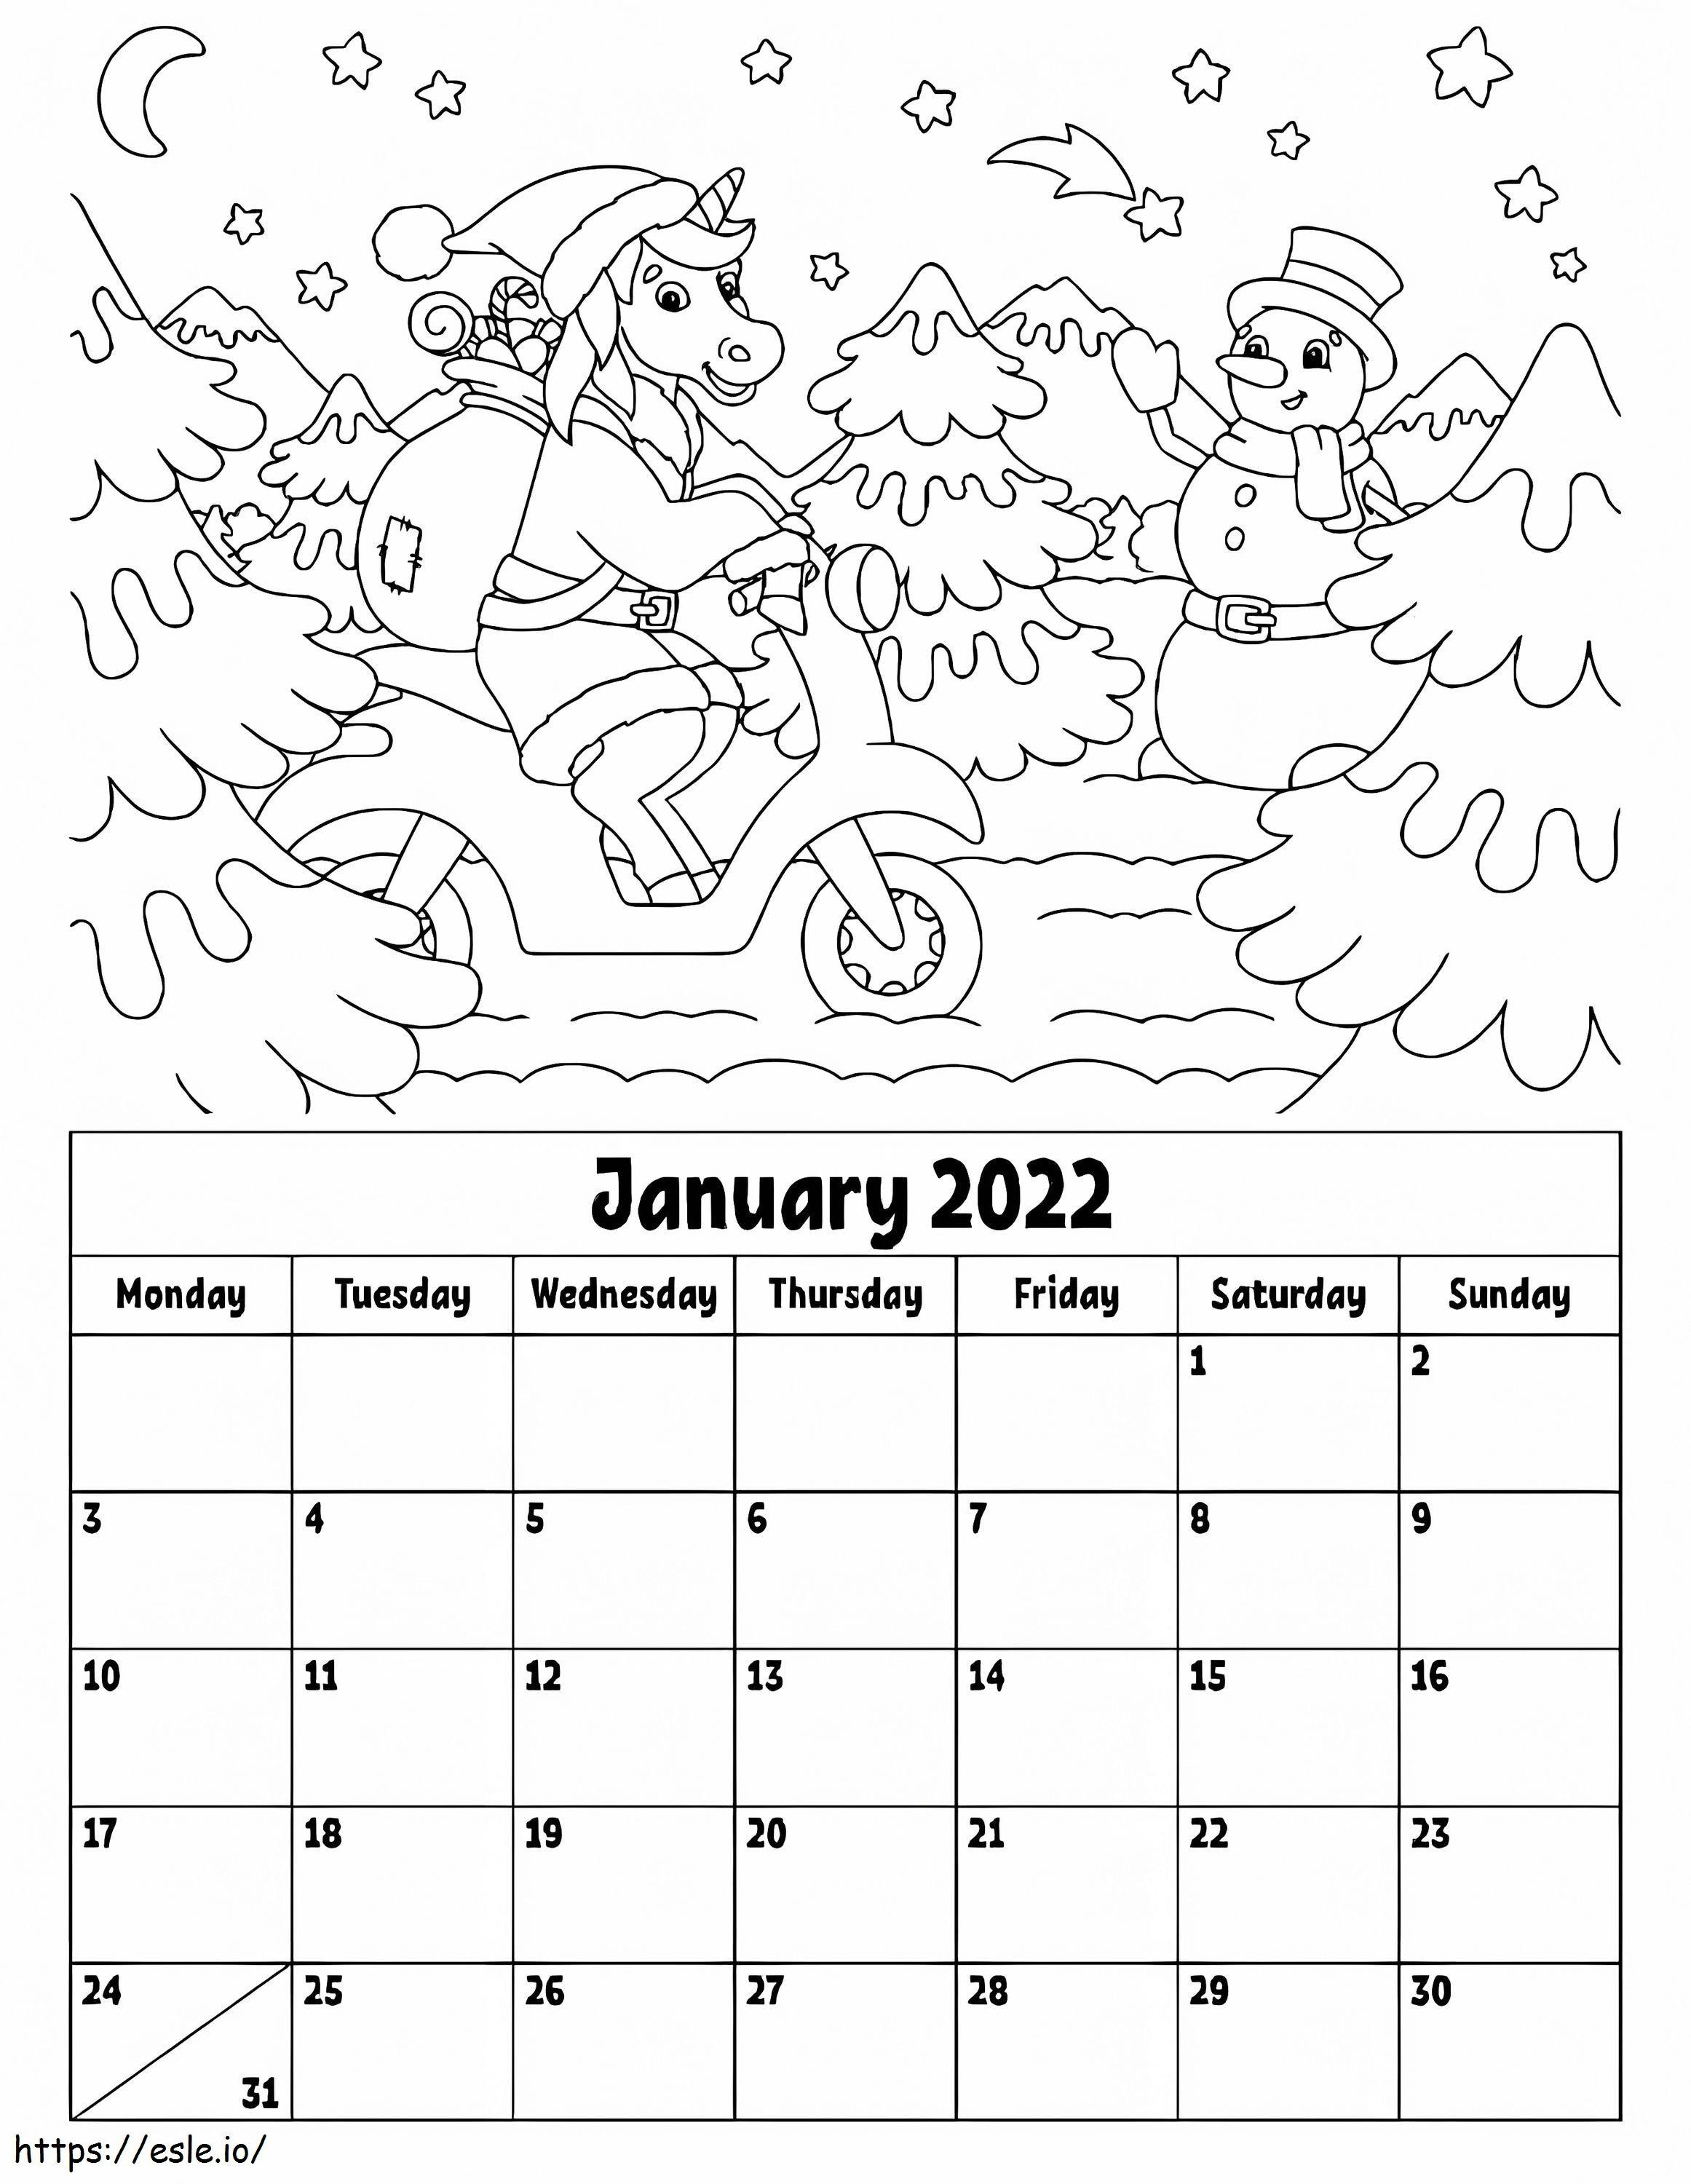 Kalendarz na styczeń 2022 r kolorowanka